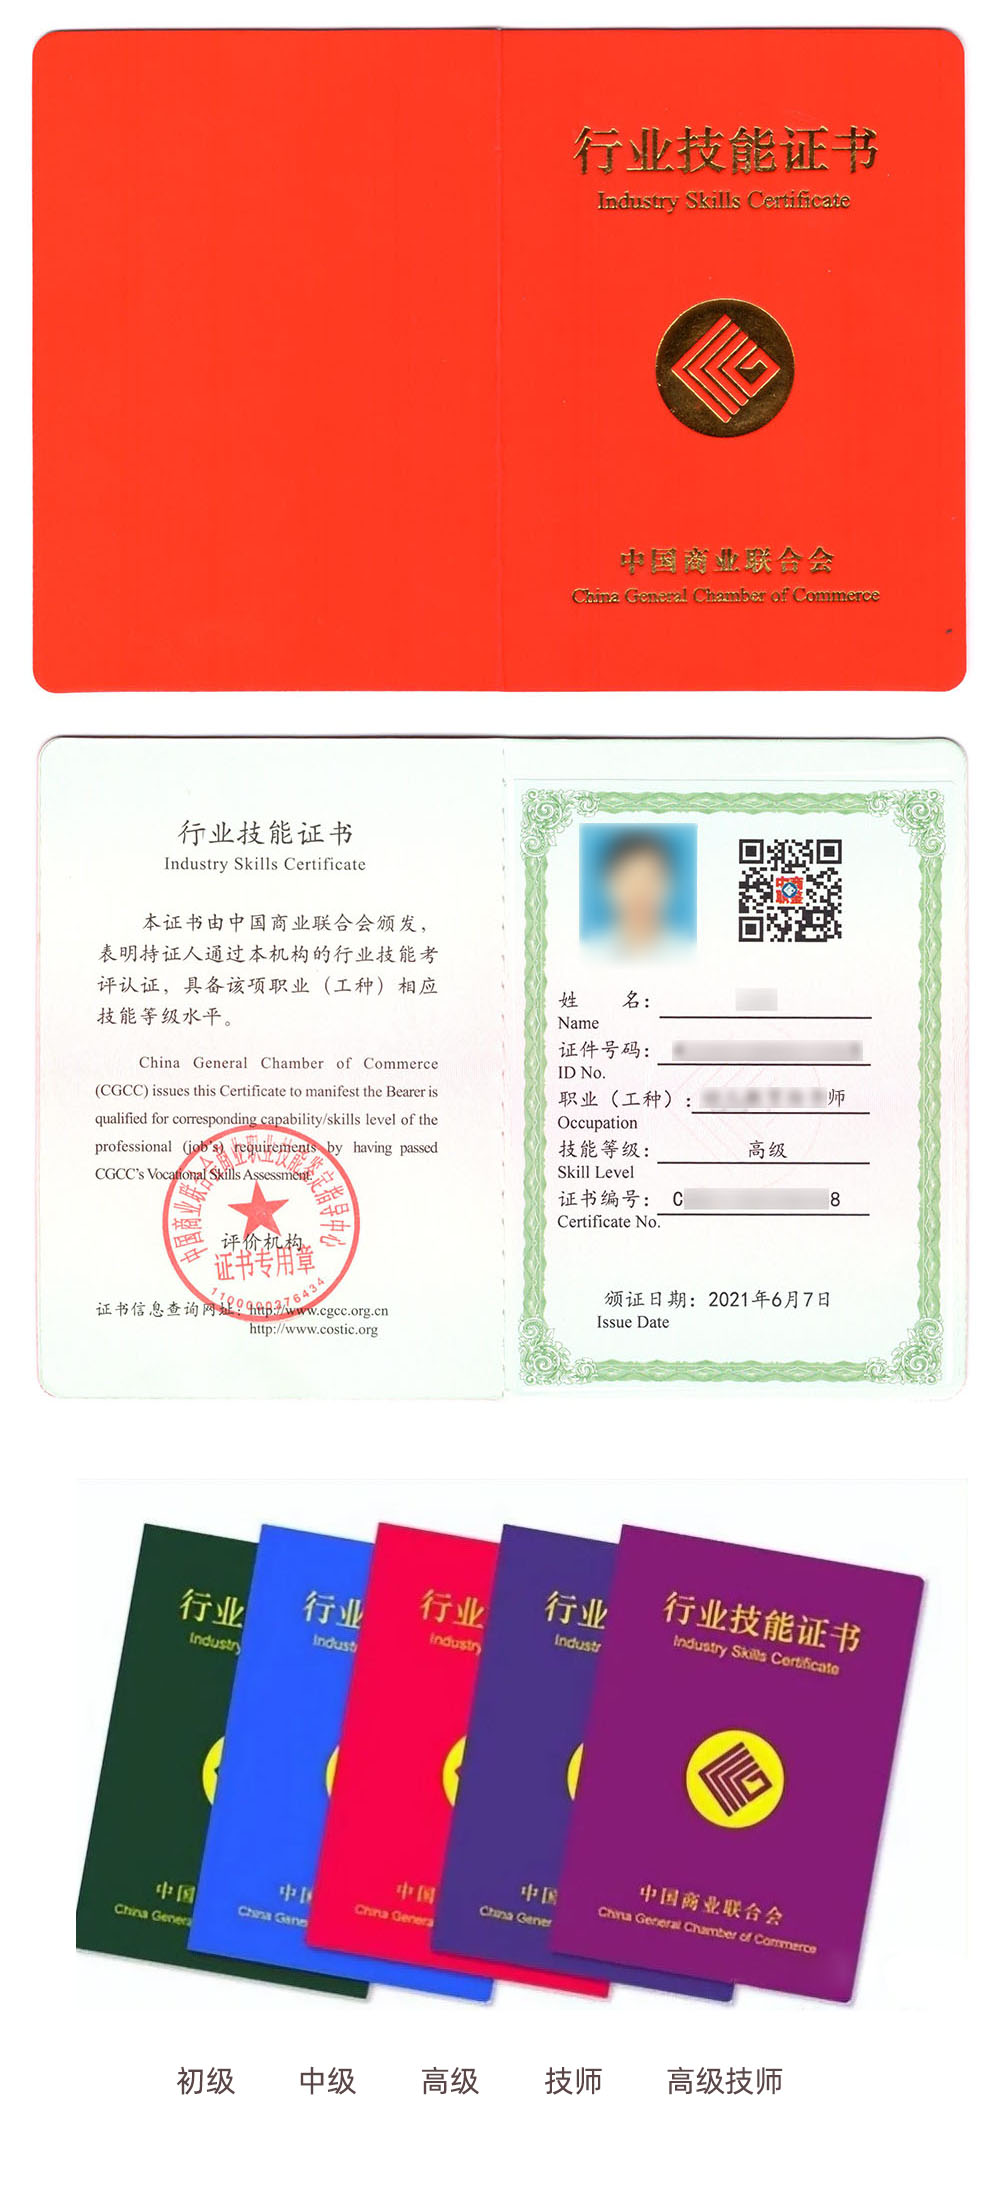 中国商业联合会商业职业技能鉴定中心 行业技能证书 环境艺术设计师证证书样本